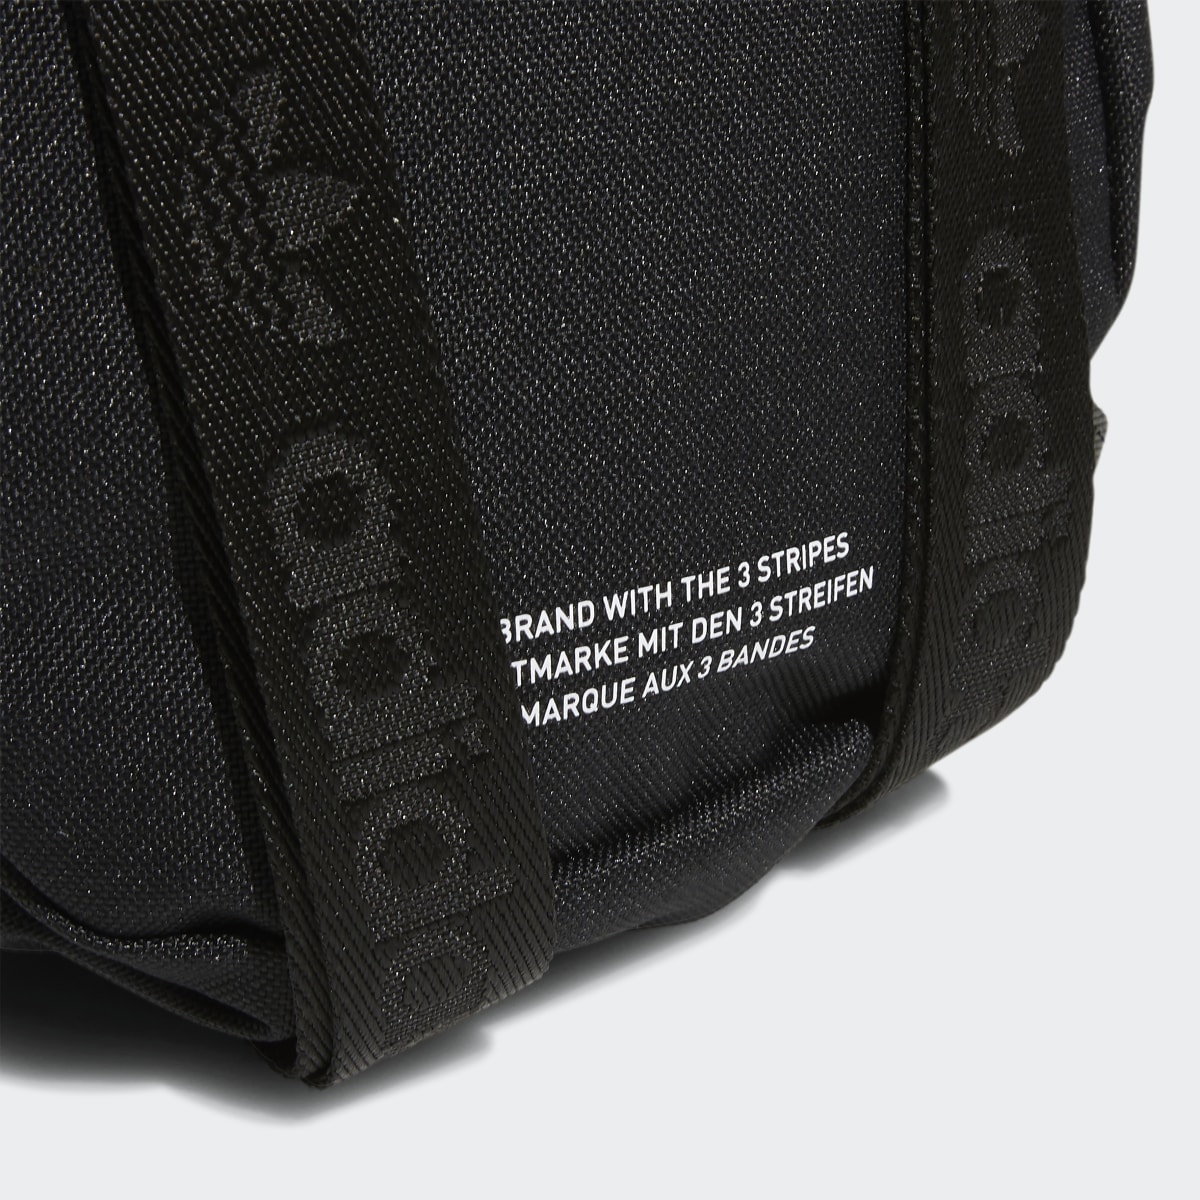 Adidas Trefoil 2.0 Mini Backpack. 8